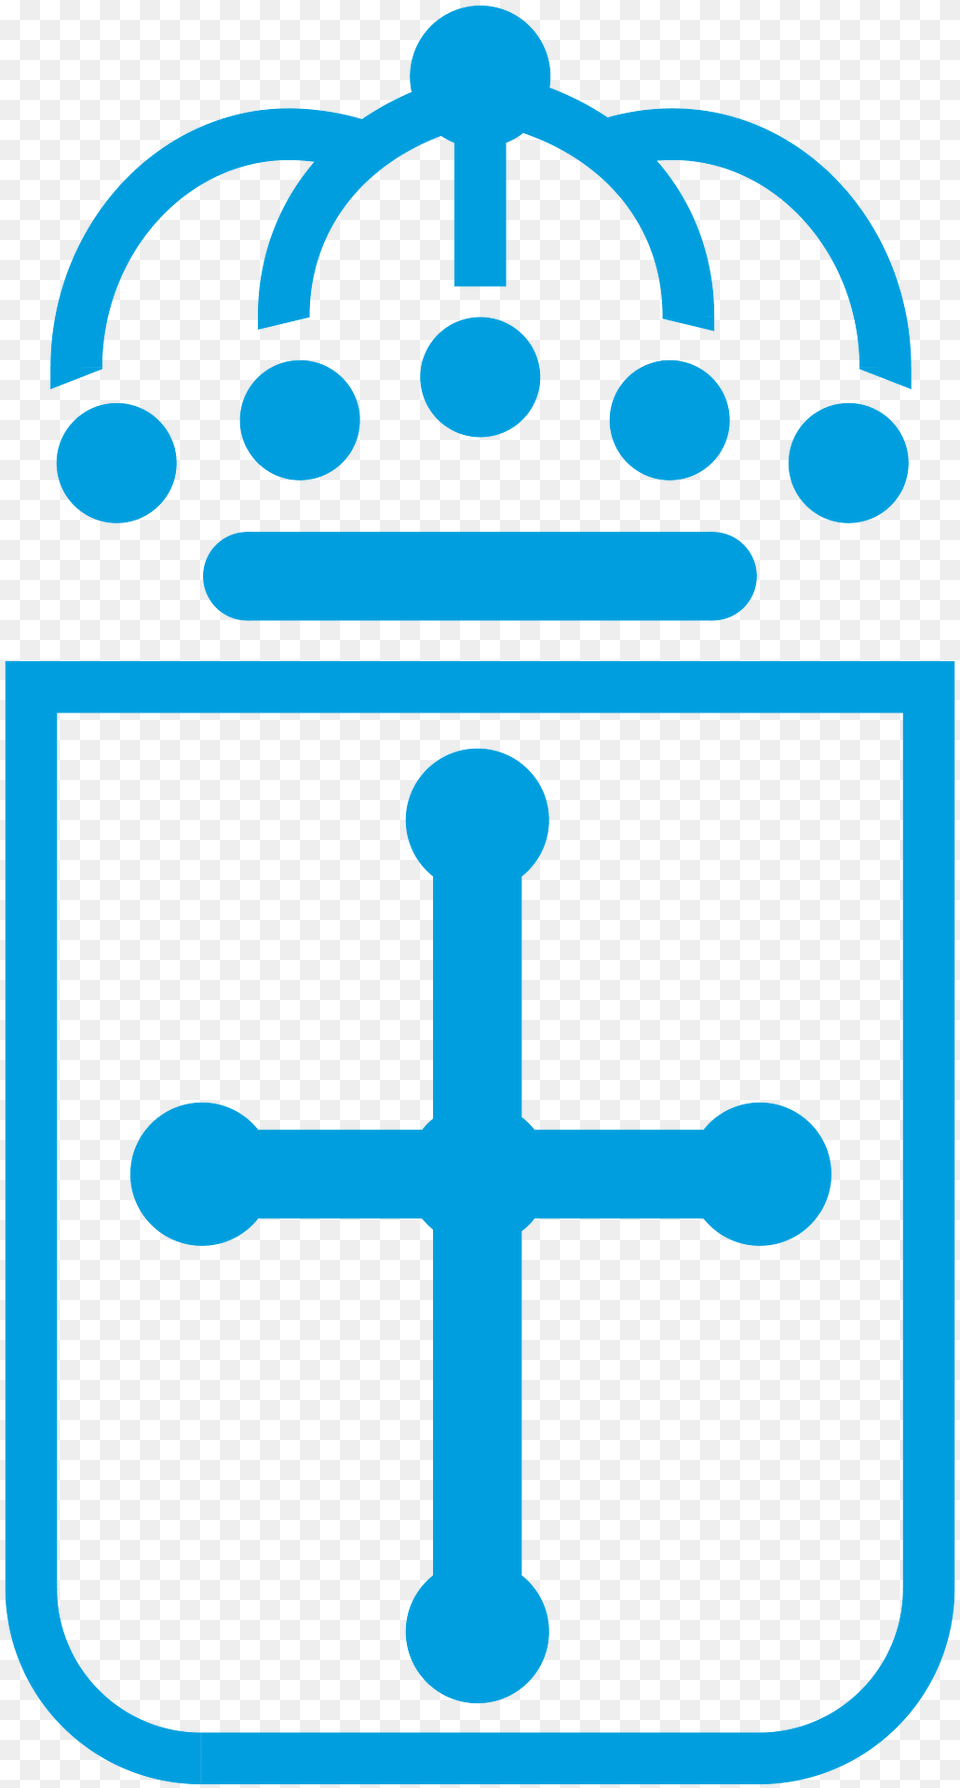 Escudo Web Del Gobierno De Asturias Clipart, Cross, Symbol Free Transparent Png